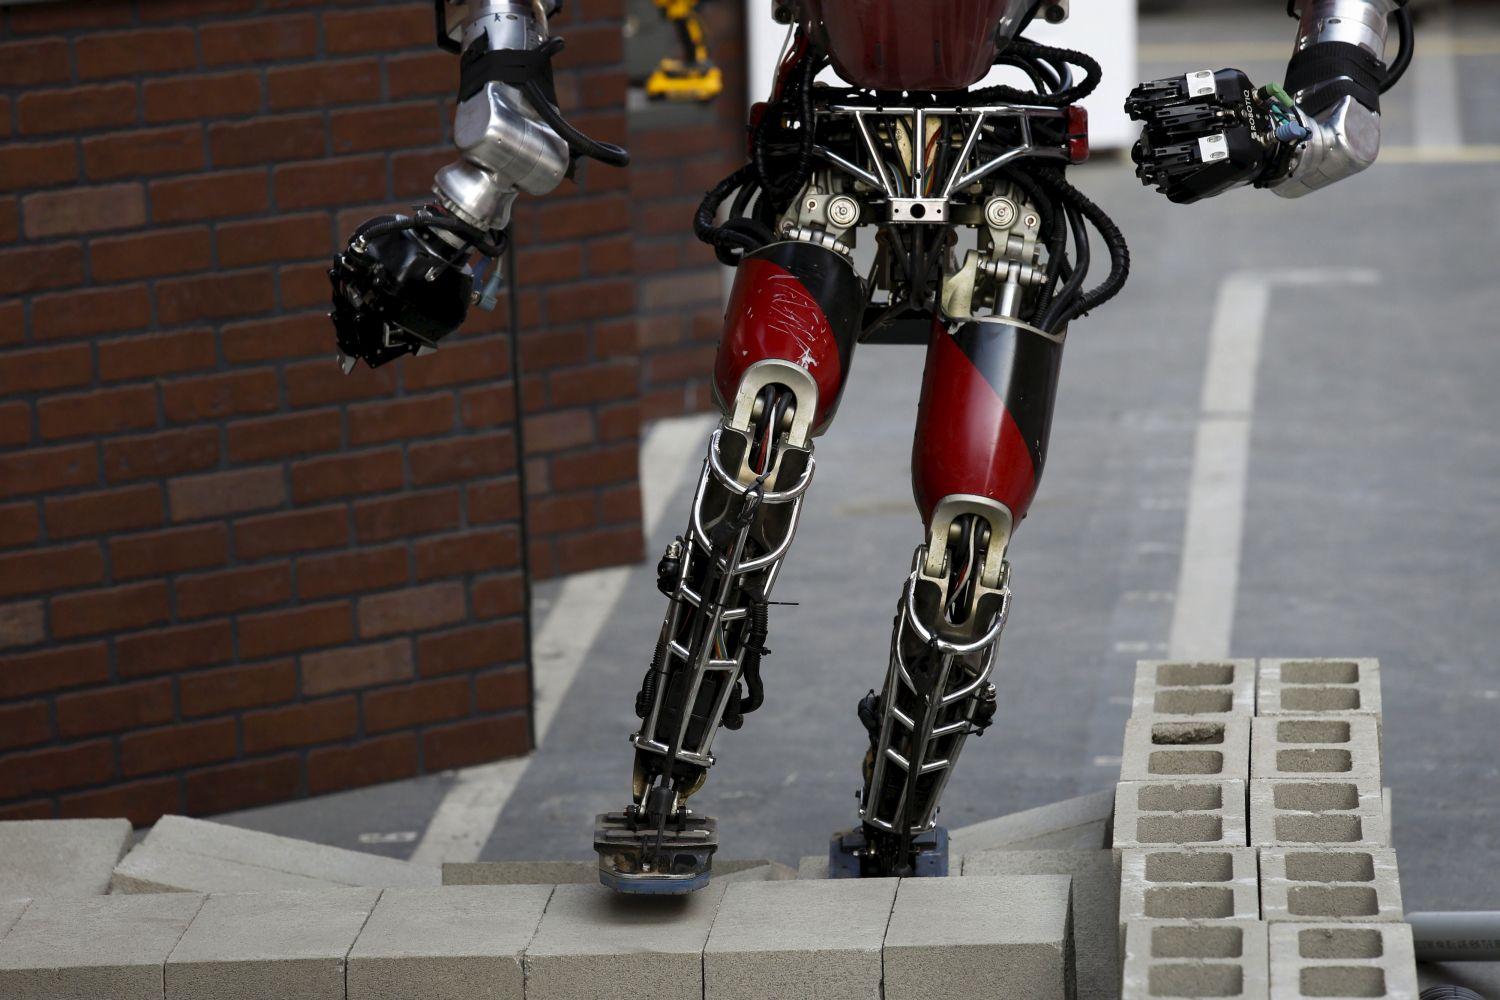 Az amerikai hadászati robotika legismertebb műhelye, a DARPA versenyt hirdetett, melyen különböző pályákon kell akadályokat leküzdeni humanoid robotokkal. Itt éppen a Team WPI-CMU robotja szerencsétlenkedik a mászós pályán